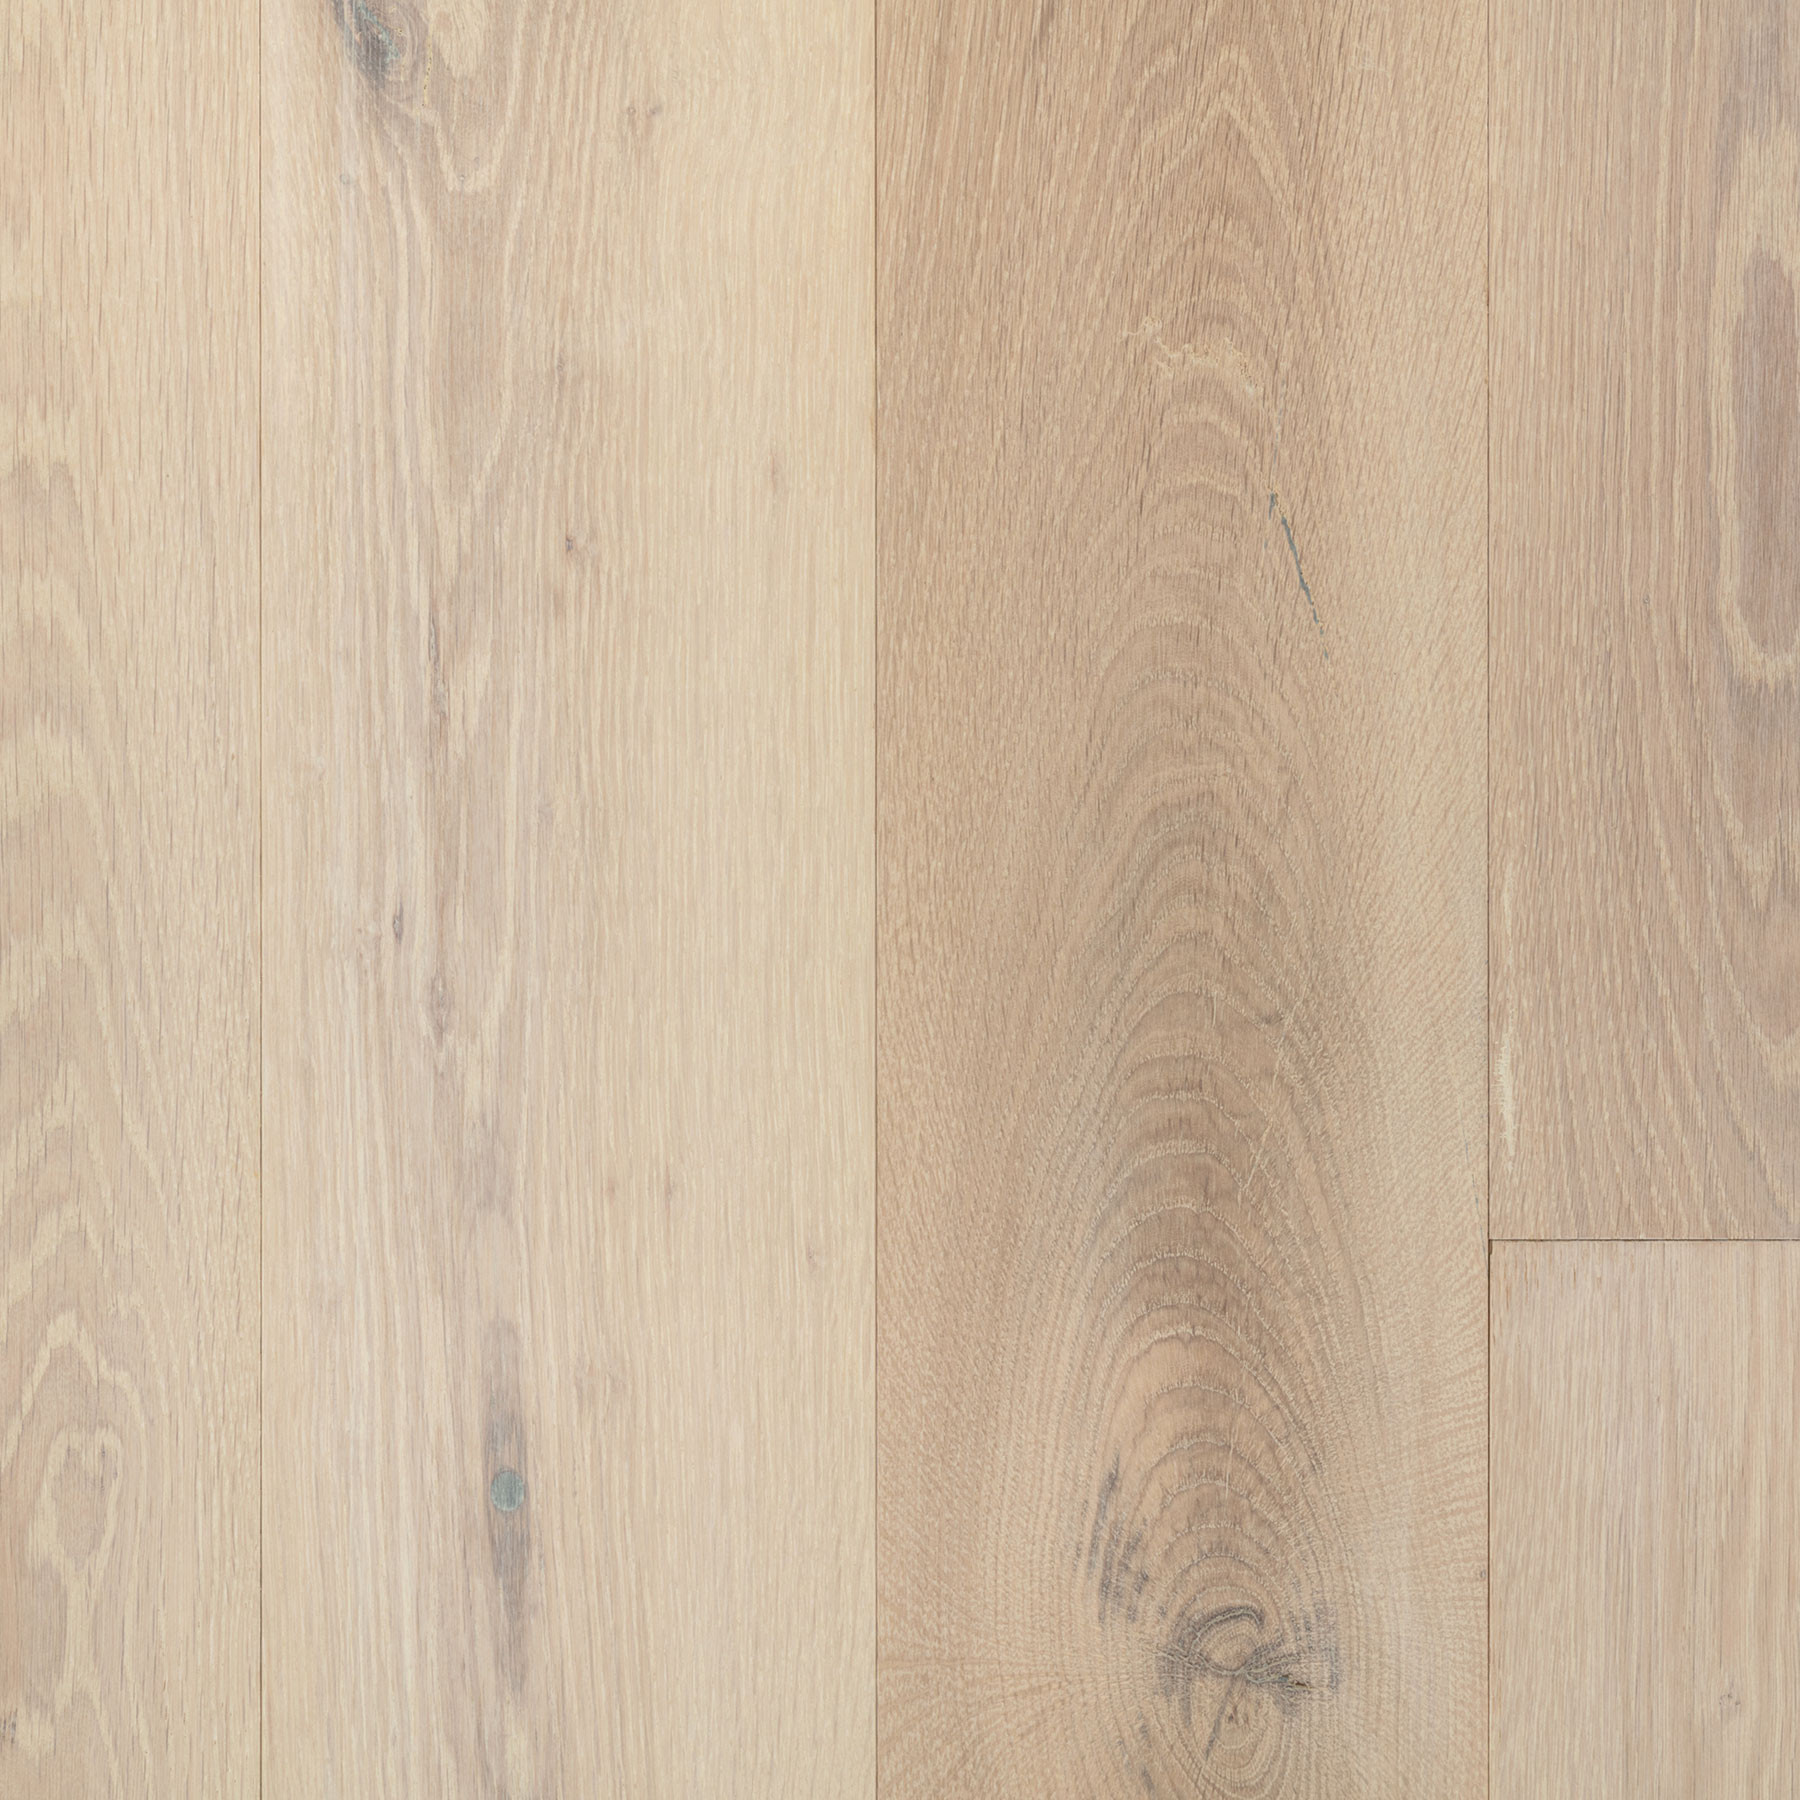 22 Elegant Grades Of Oak Hardwood Flooring 2024 free download grades of oak hardwood flooring of signature white oak arctic etx surfaces within signature white oak arctic